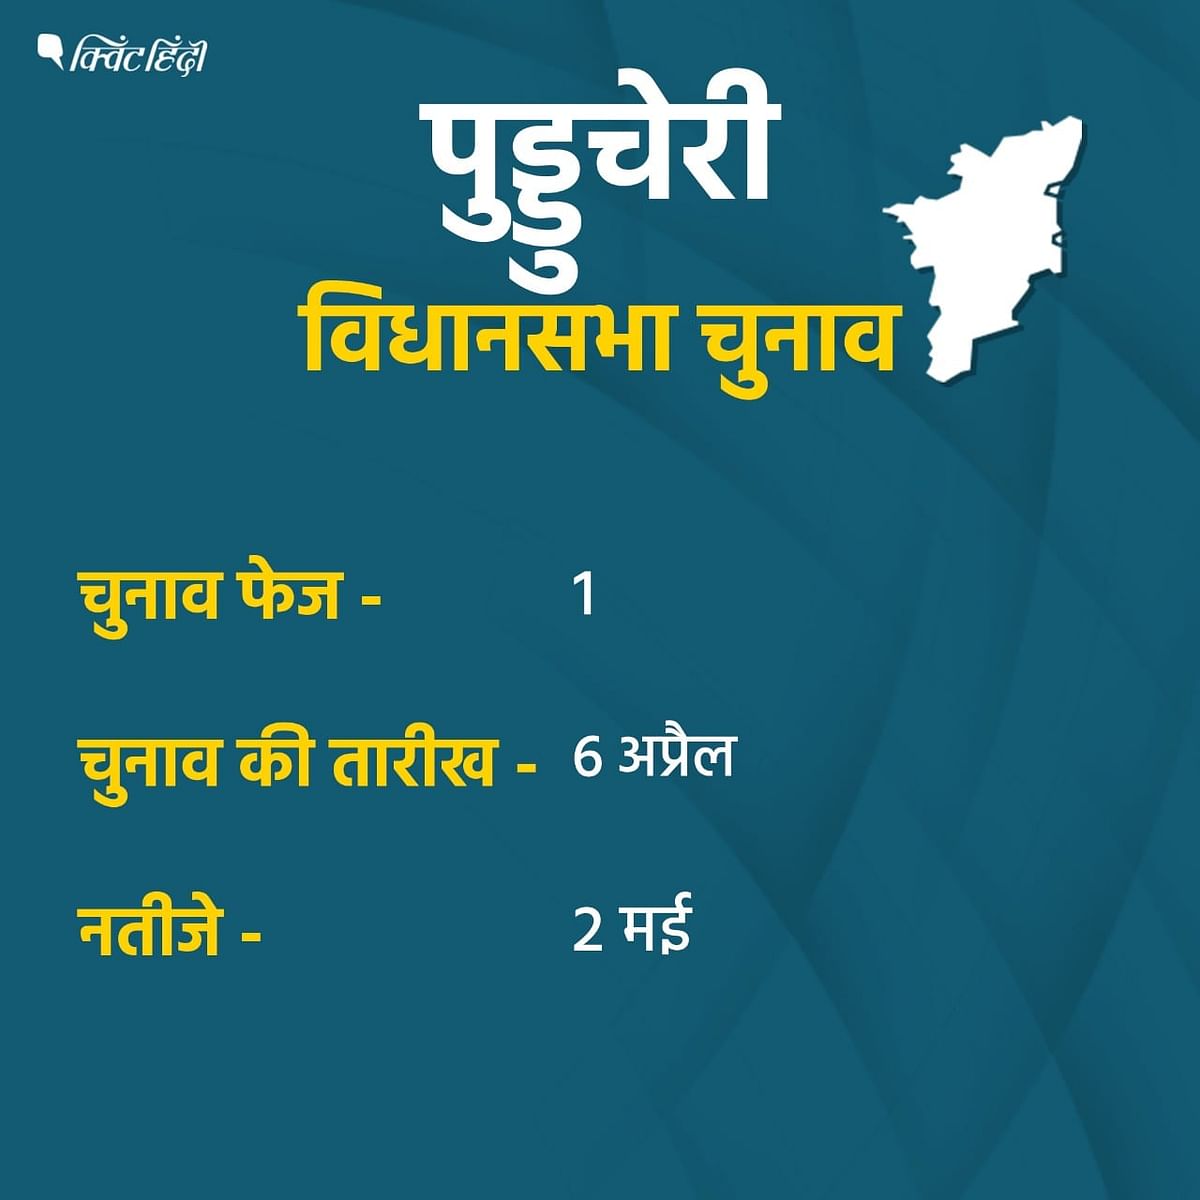 पुडुचेरी में पिछले विधानसभा चुनाव के नतीजे क्या थे?